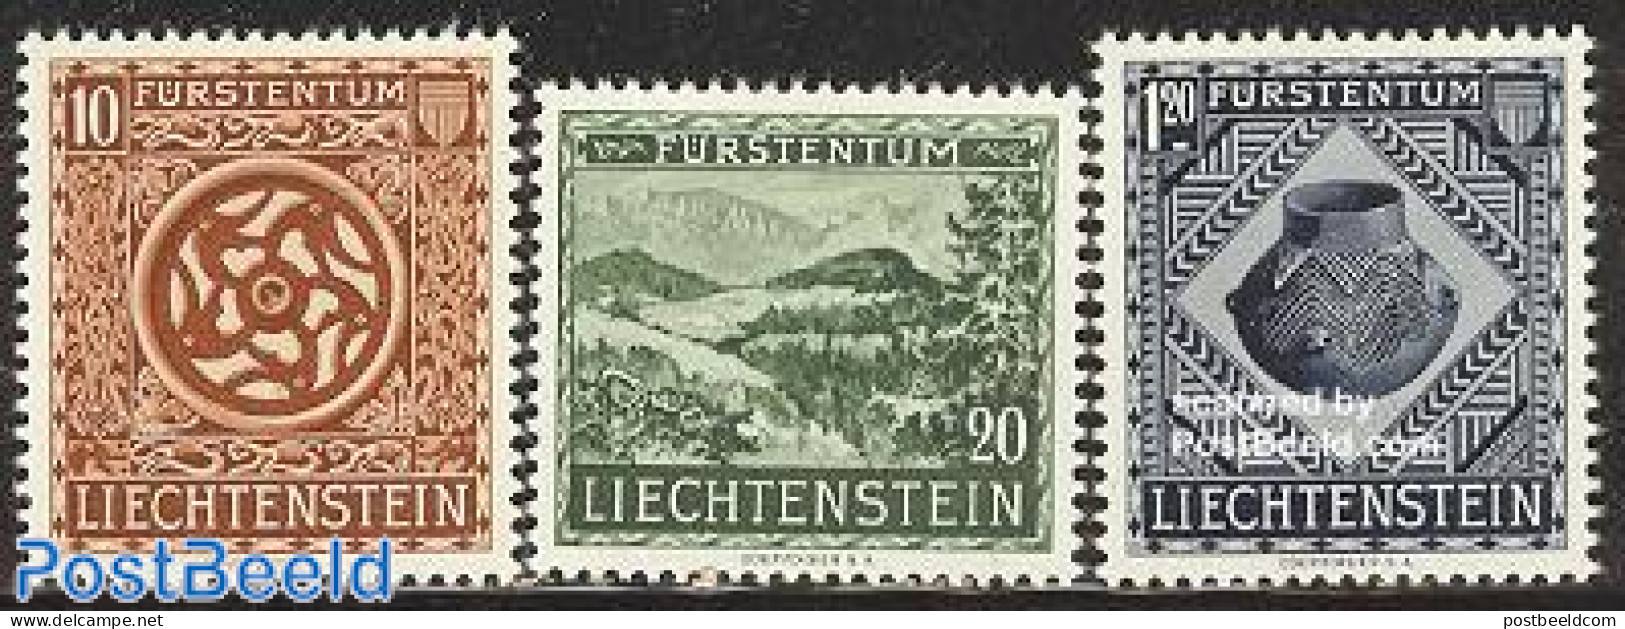 Liechtenstein 1953 National Museum 3v, Mint NH, History - Archaeology - Art - Museums - Ungebraucht